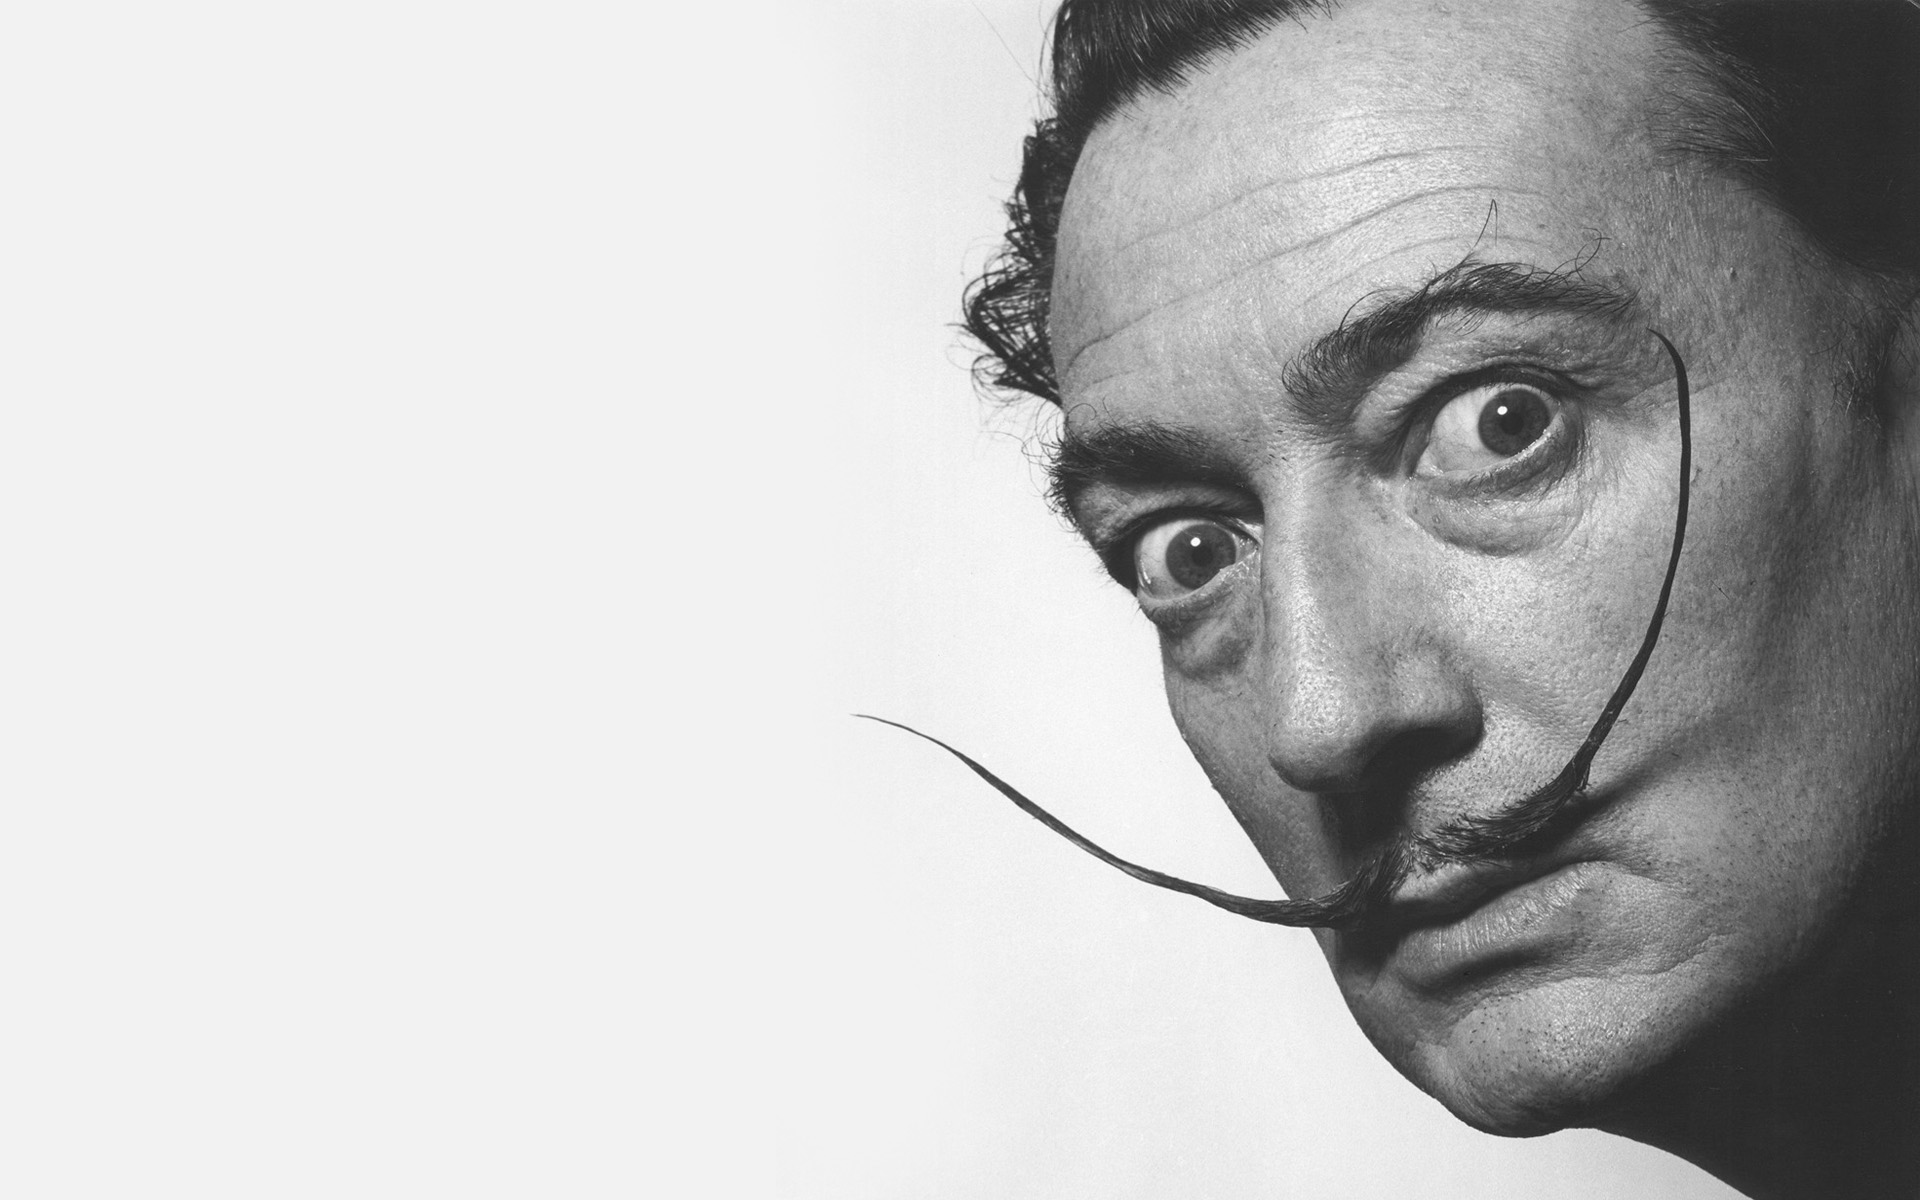 Como cuando Dalí no acepta la paternidad